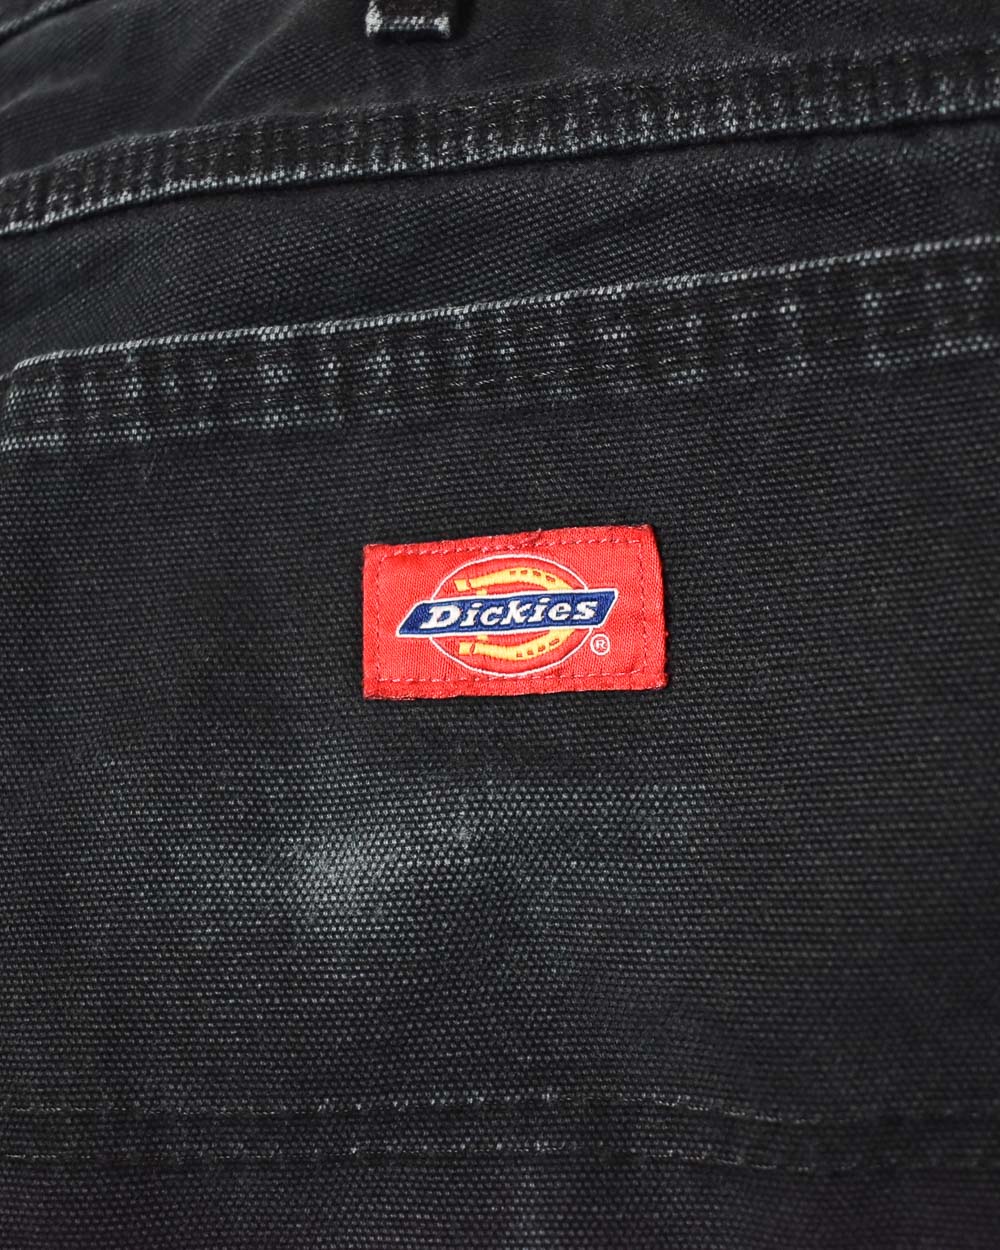 Black Dickies Carpenter Jeans - W32 L30